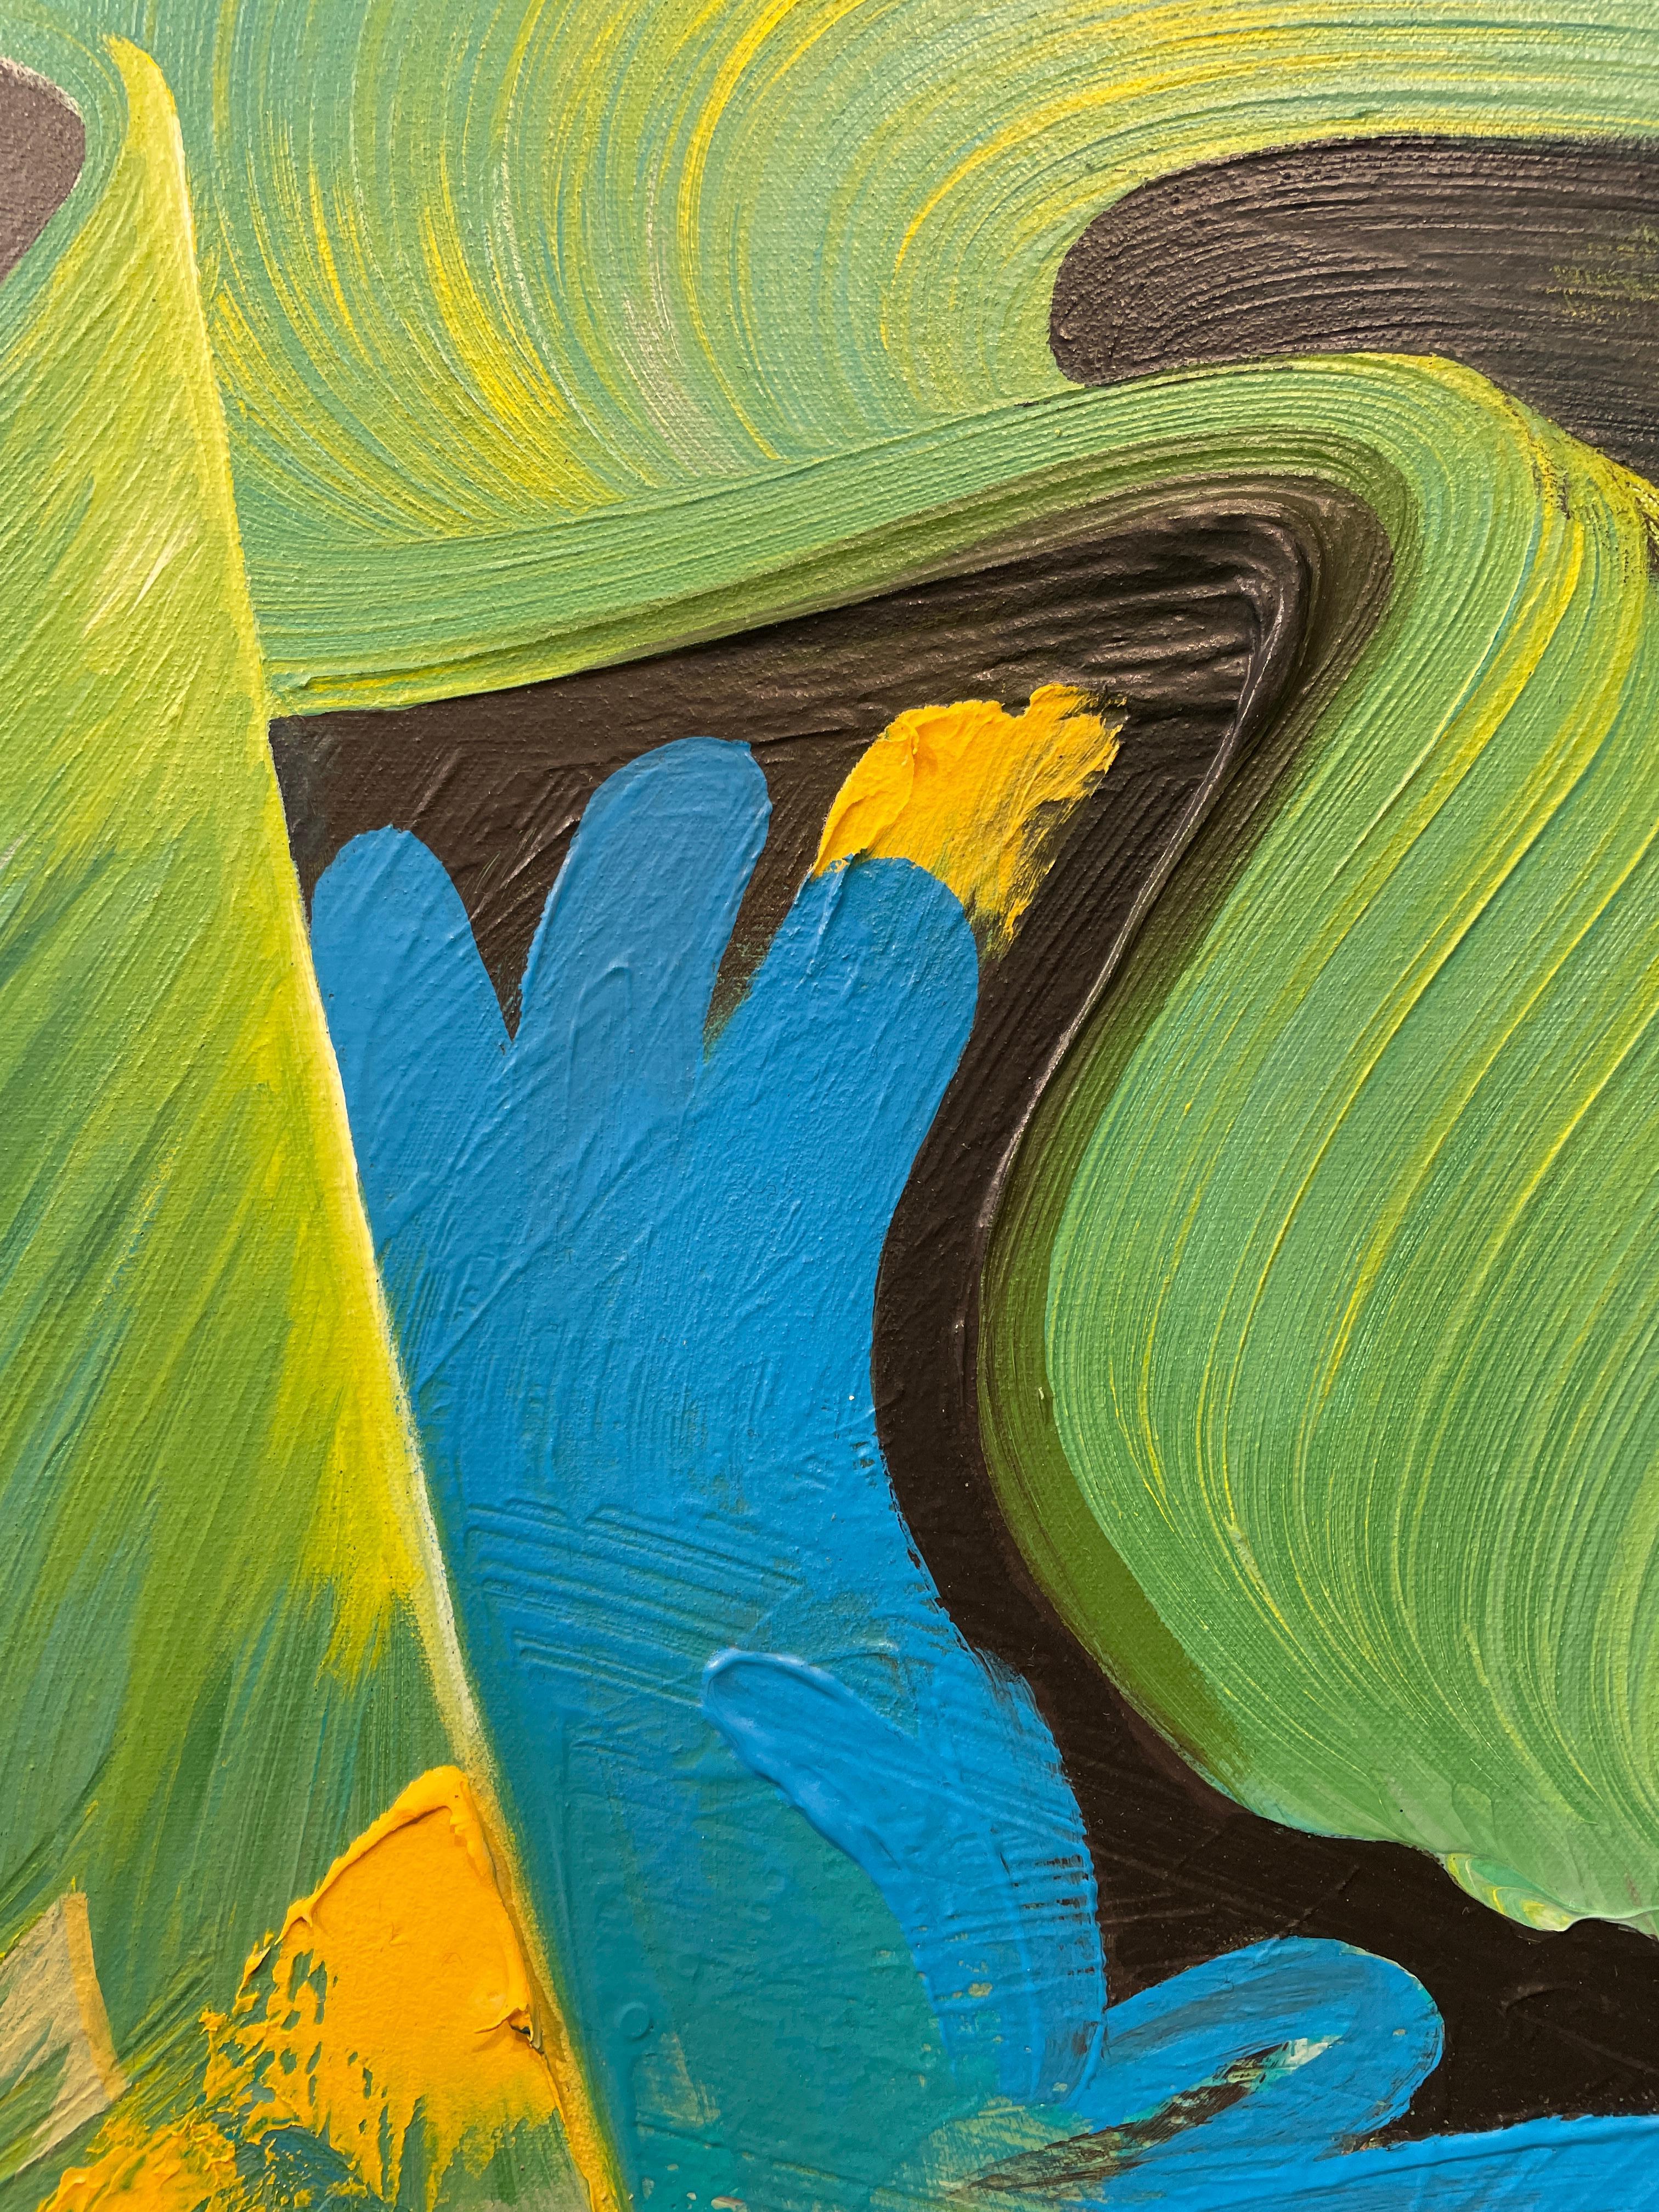  Maitri - Peinture abstraite de style graffiti bouddhiste en bleus et verts vifs - Bleu Abstract Painting par Connor Hughes